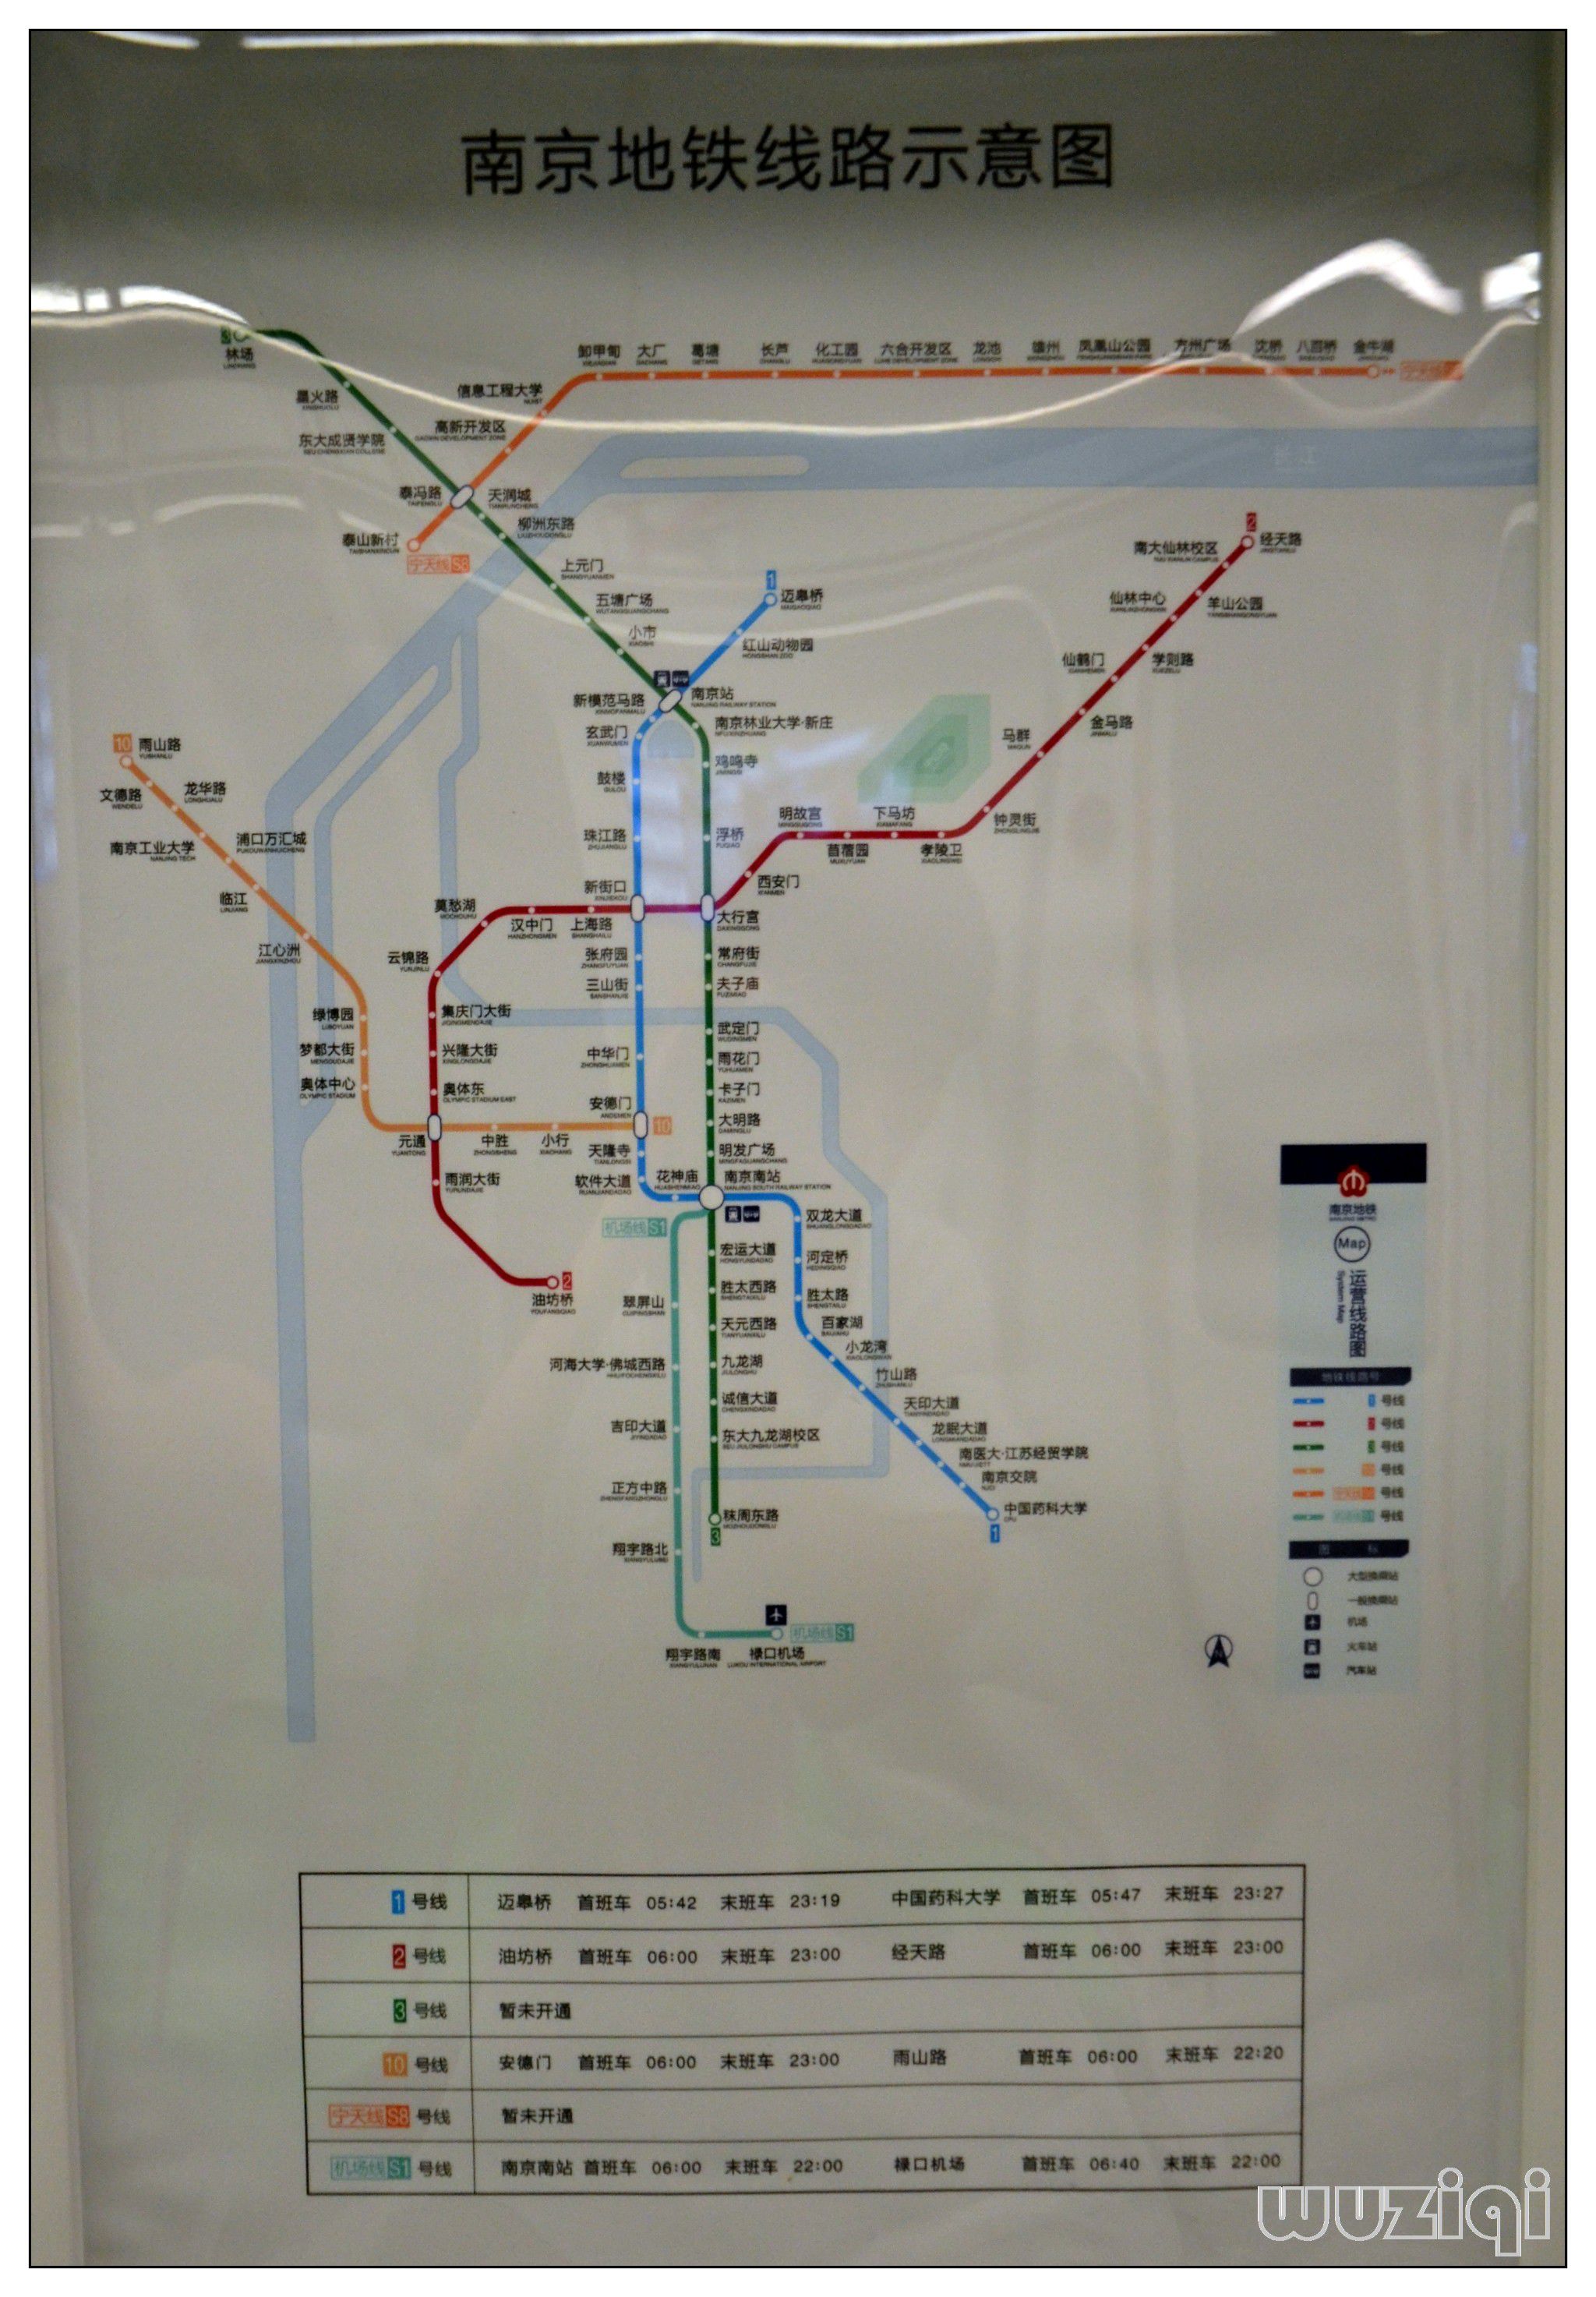 谁知道北京地铁s1线沿线有哪些站（s1号线地铁线路图）